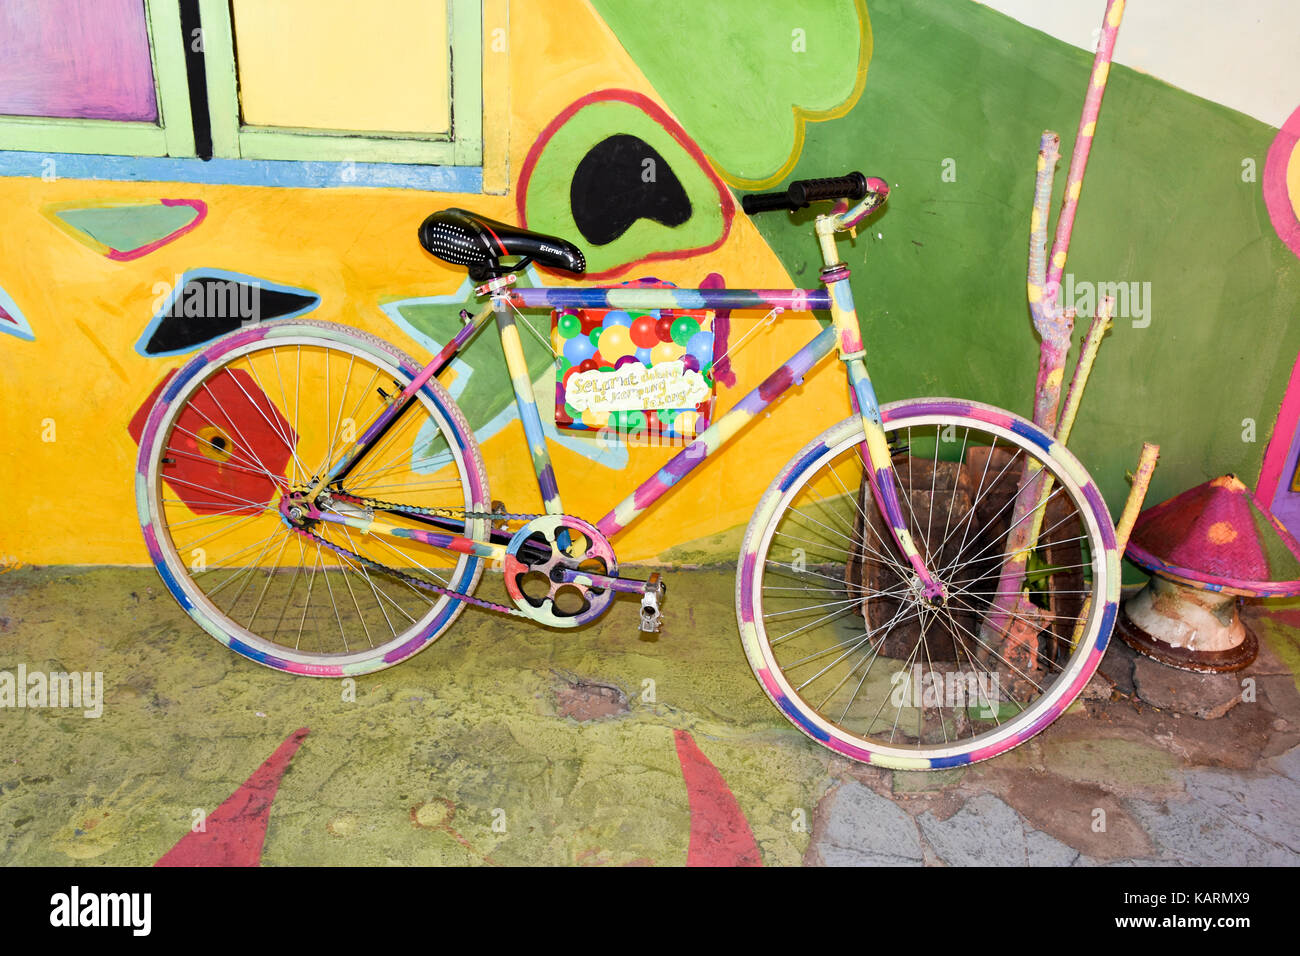 Peint coloré vélo à la rainbow village de Semerang, Indonésie Banque D'Images